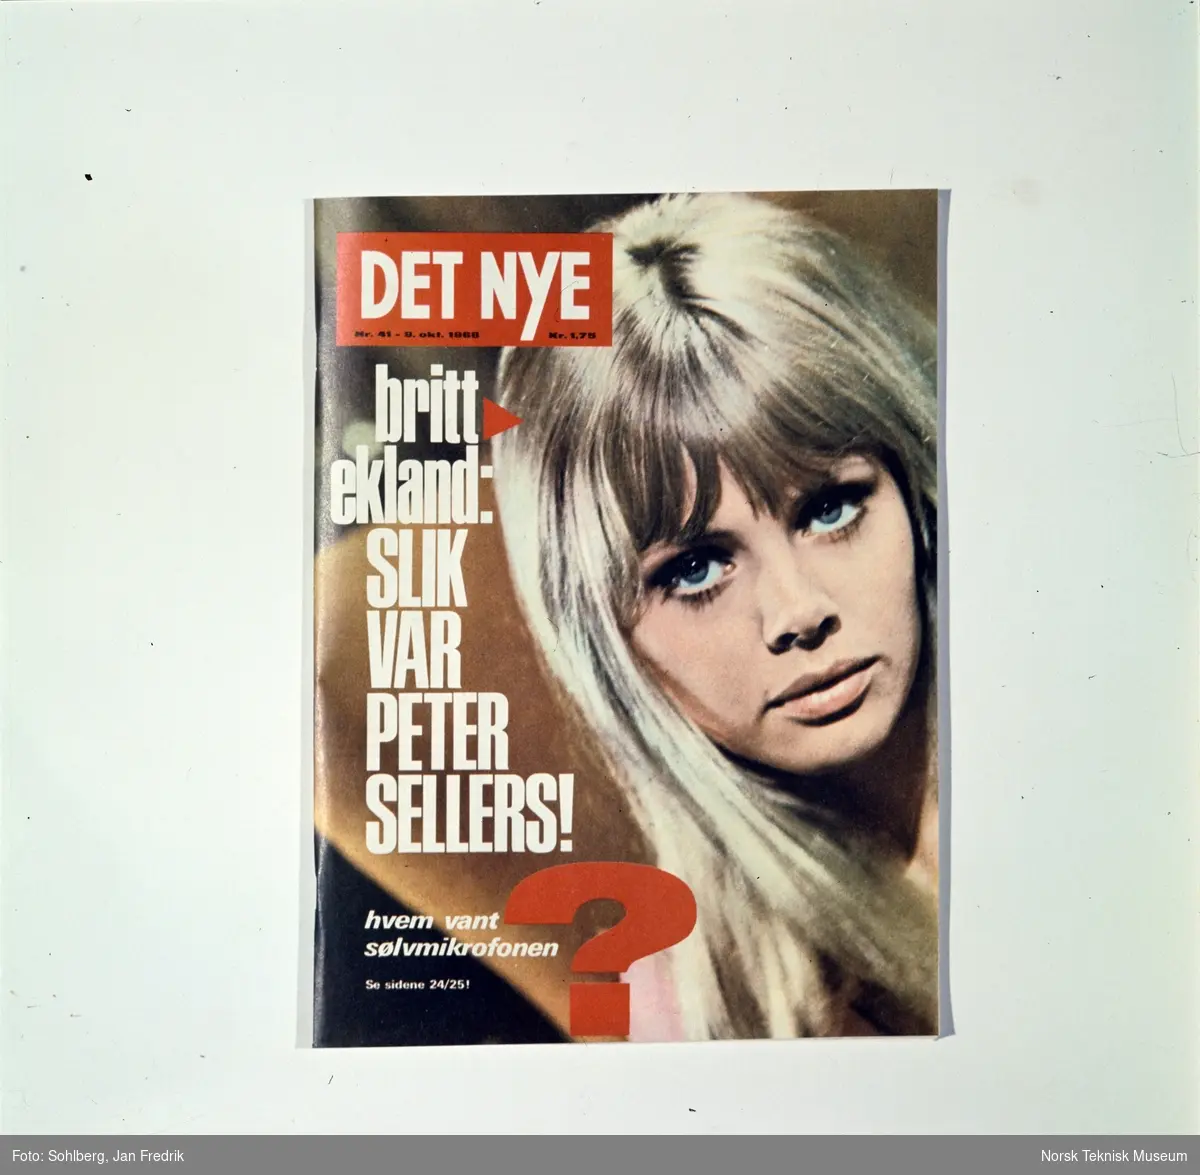 Forside på ukebladet Det Nye, nr. 41, 9.oktober 1968. Med reporasjer som "Hvem vant sølvmikrofonen" og intervju med Brit Ekland med overskriften: "Slik var Peter Sellers!".